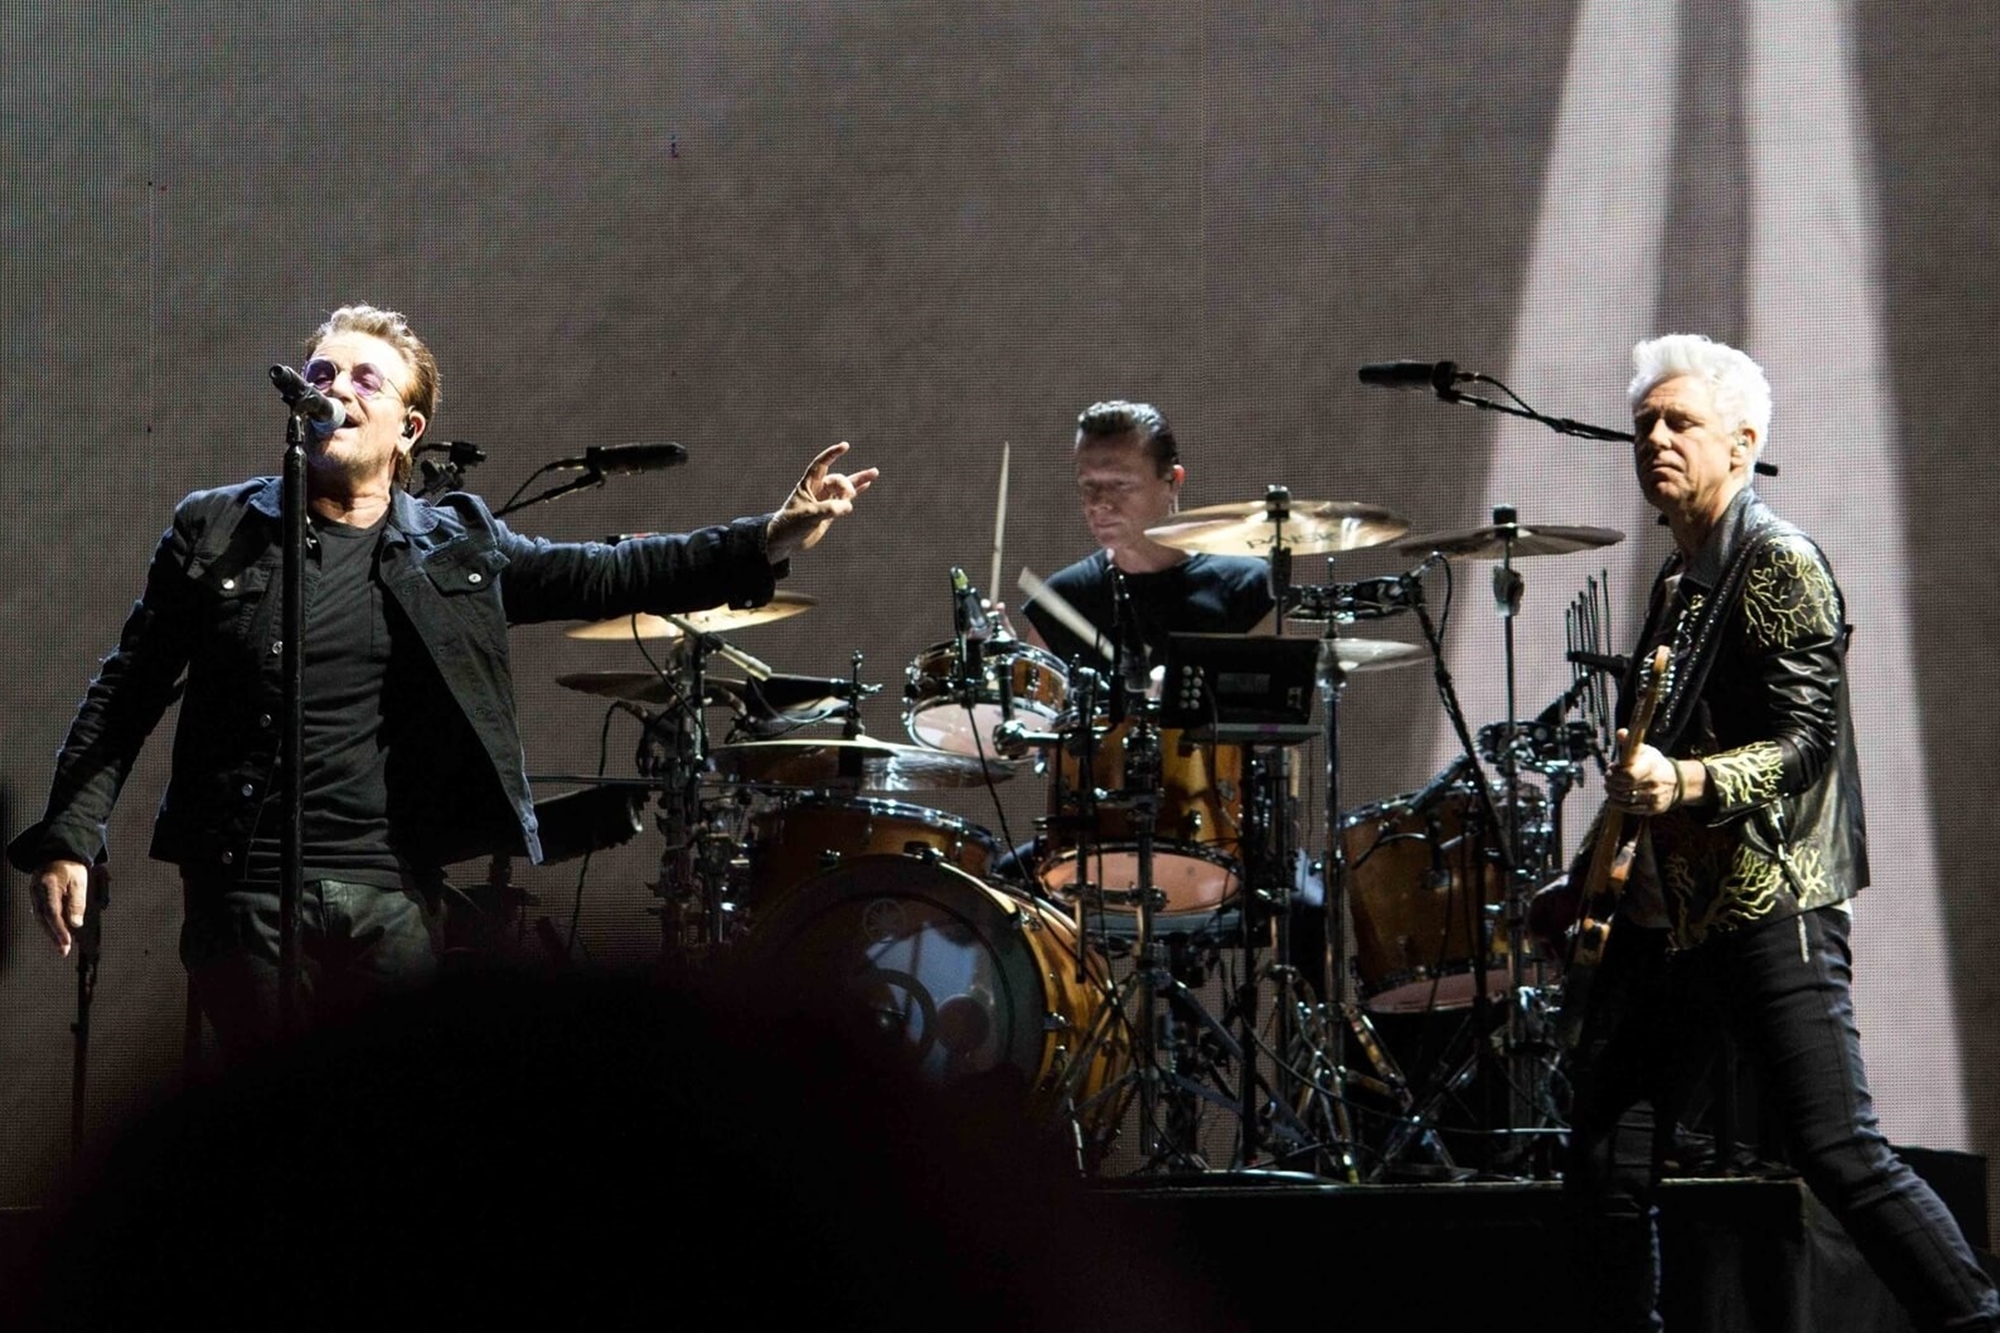 U2 a Dublin Story - Sights of Dublin